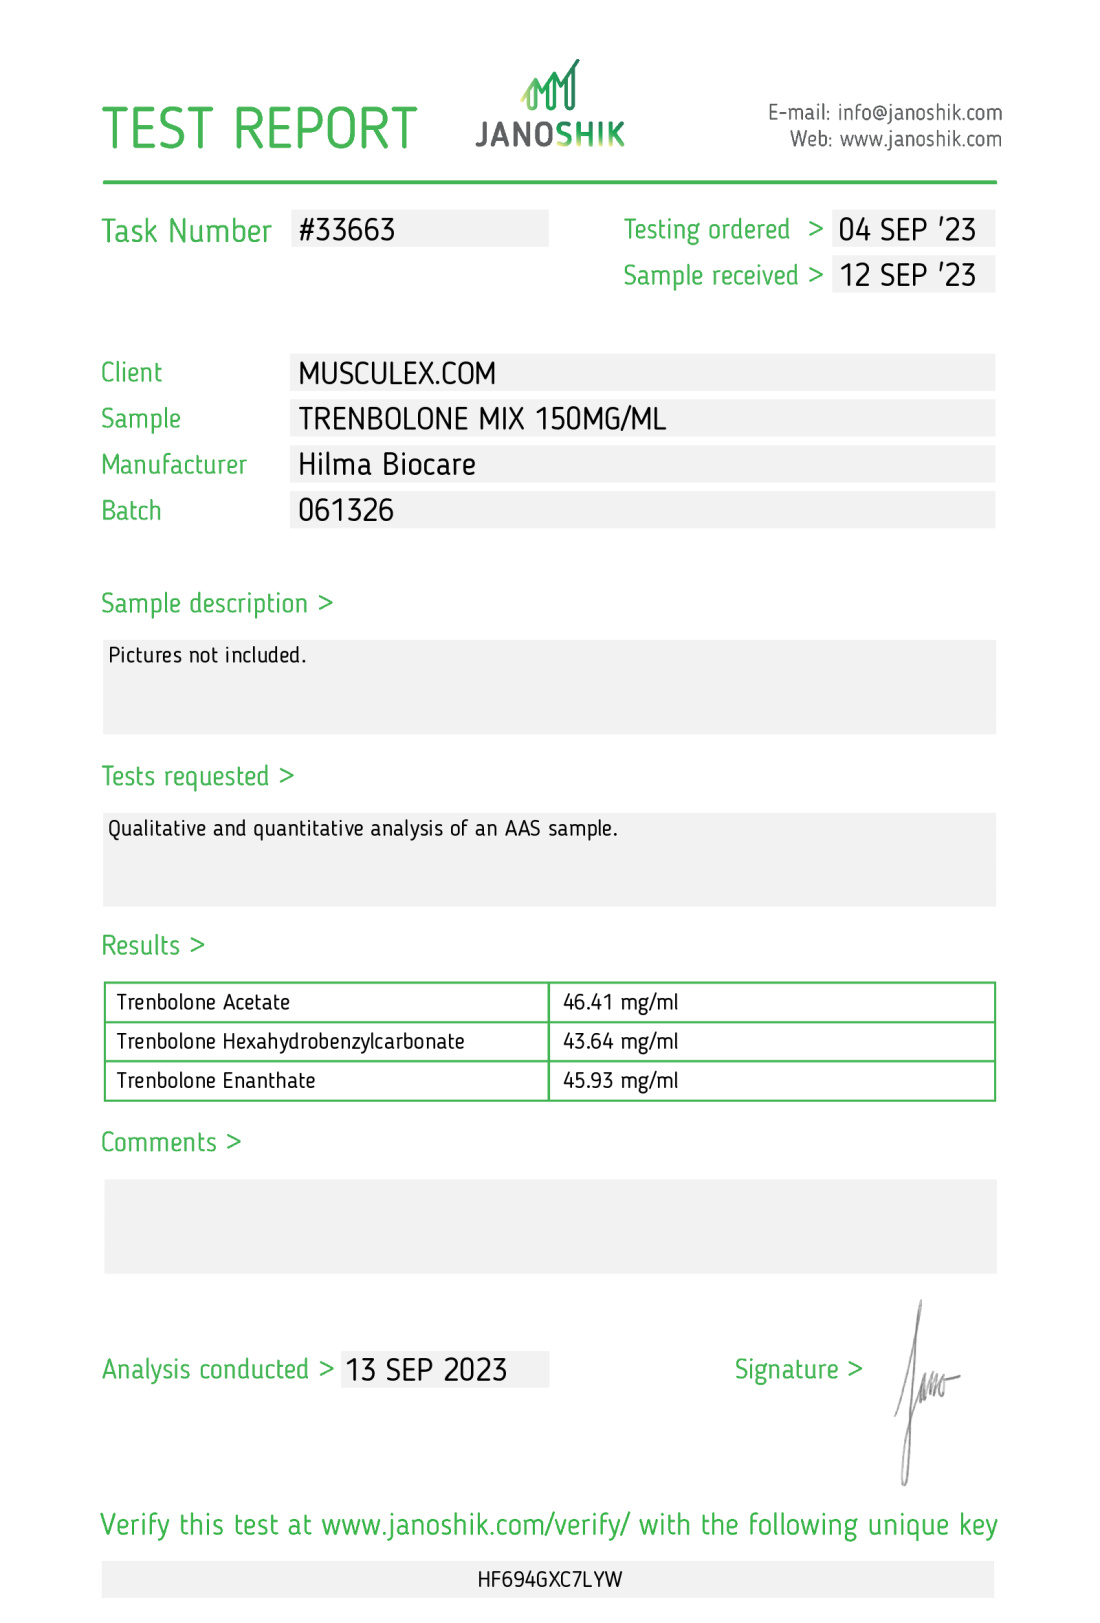 Mezcla de trembolona (Tri Trenabol) Fabricante: Hilma Biocare Paquete: 10 ml / vial (150 mg/ml)